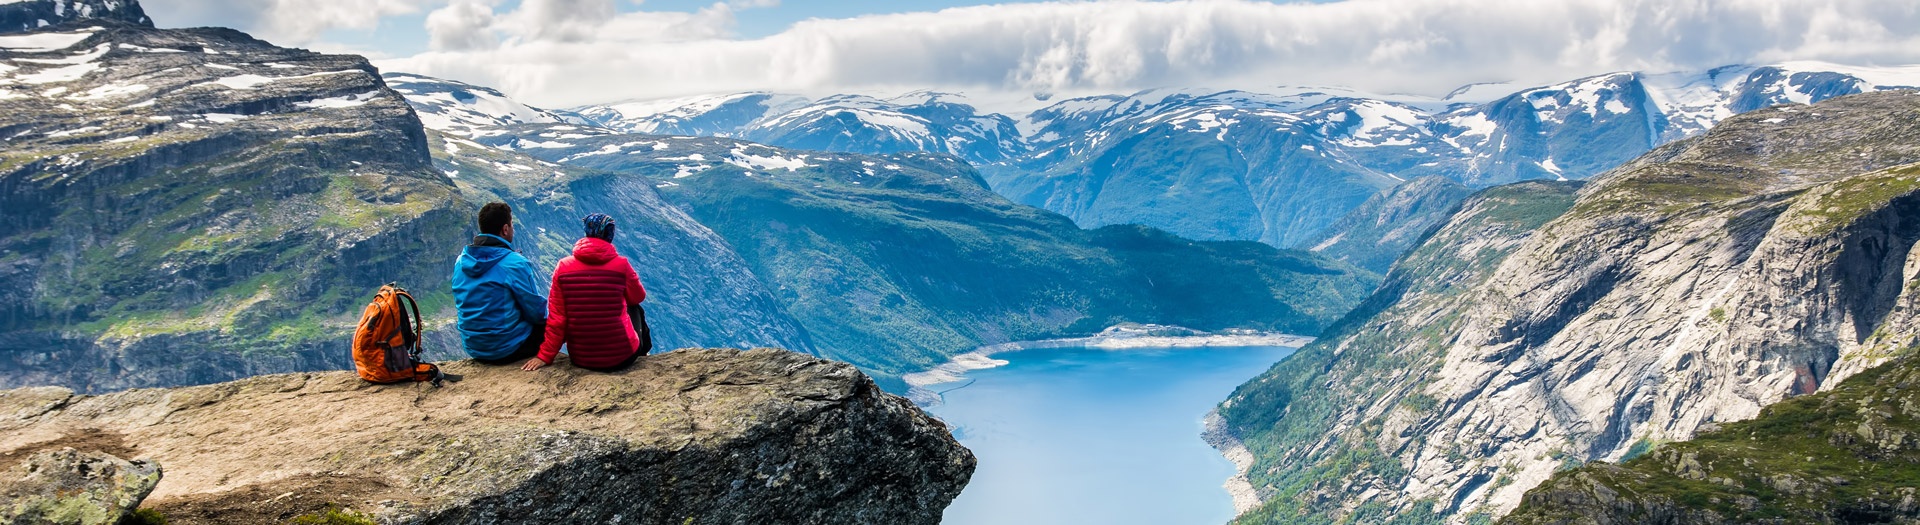 Le Sud norvégien, entre nature et culture